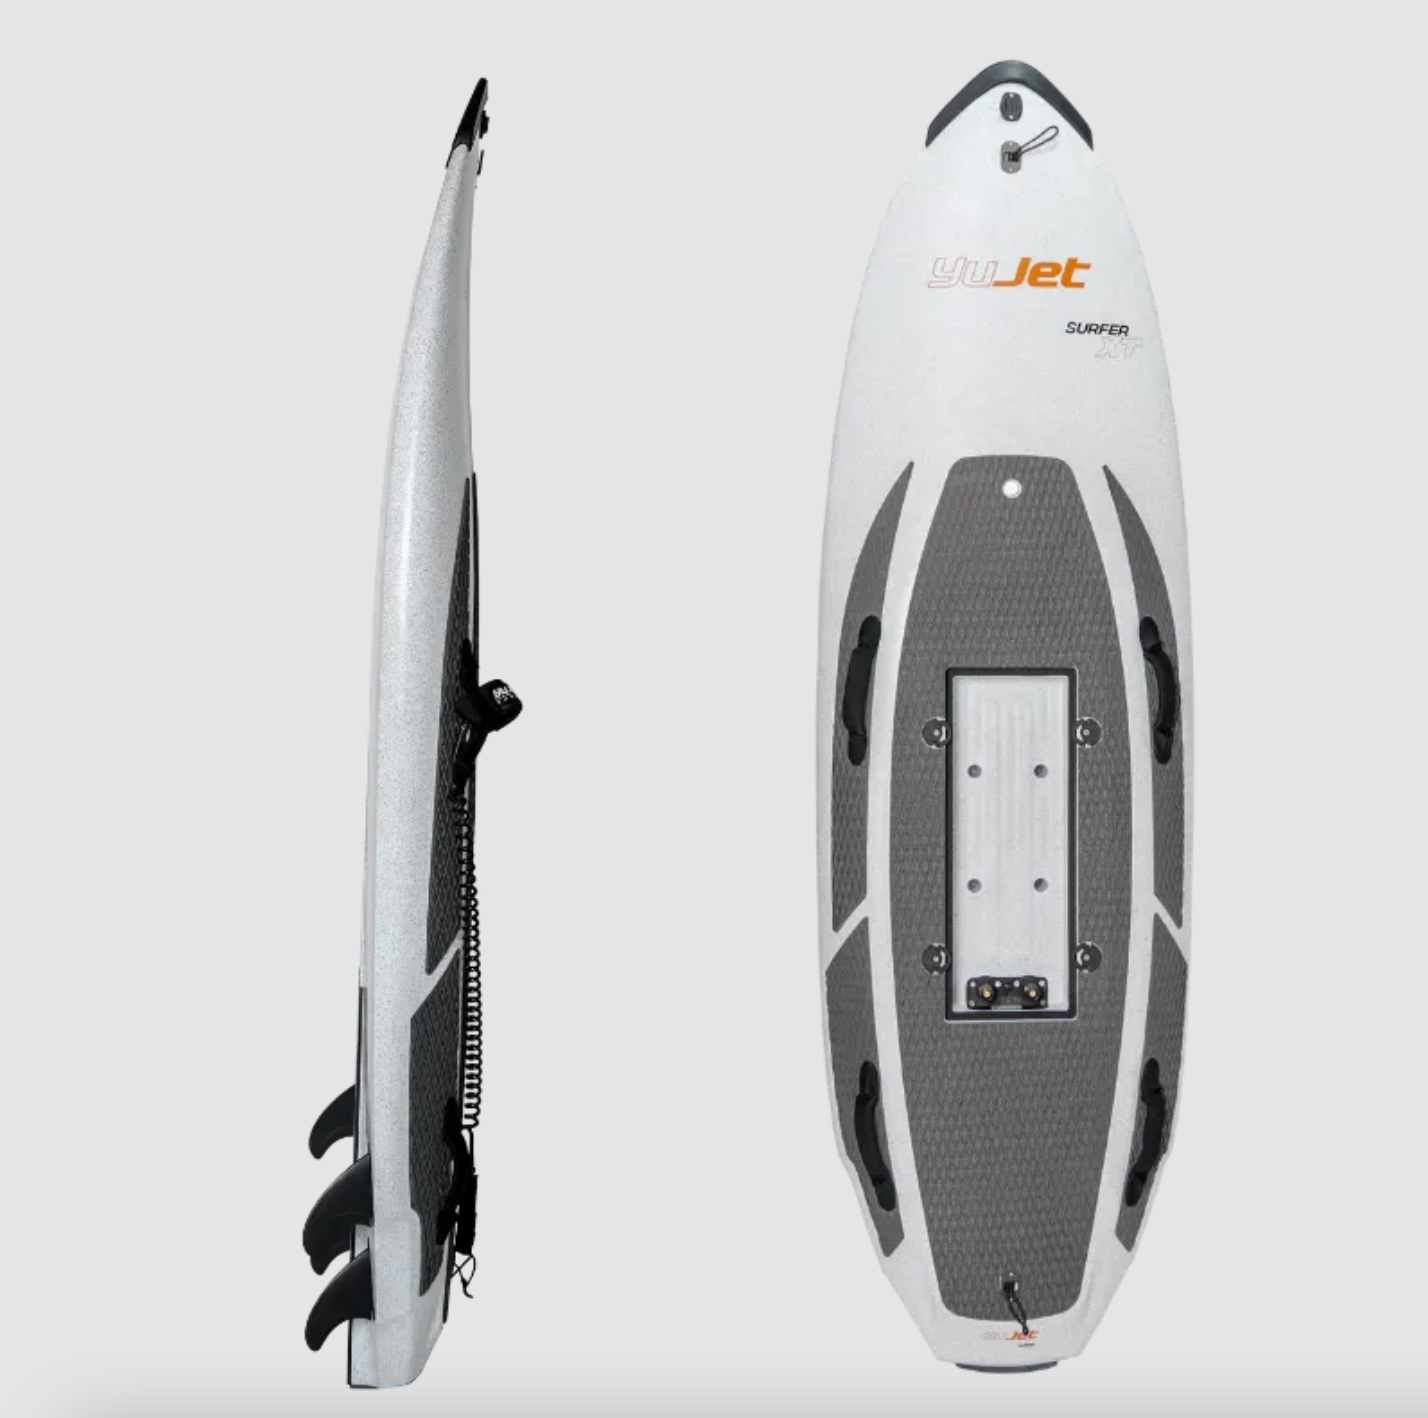 Yujet Surfer XT electric surfboard